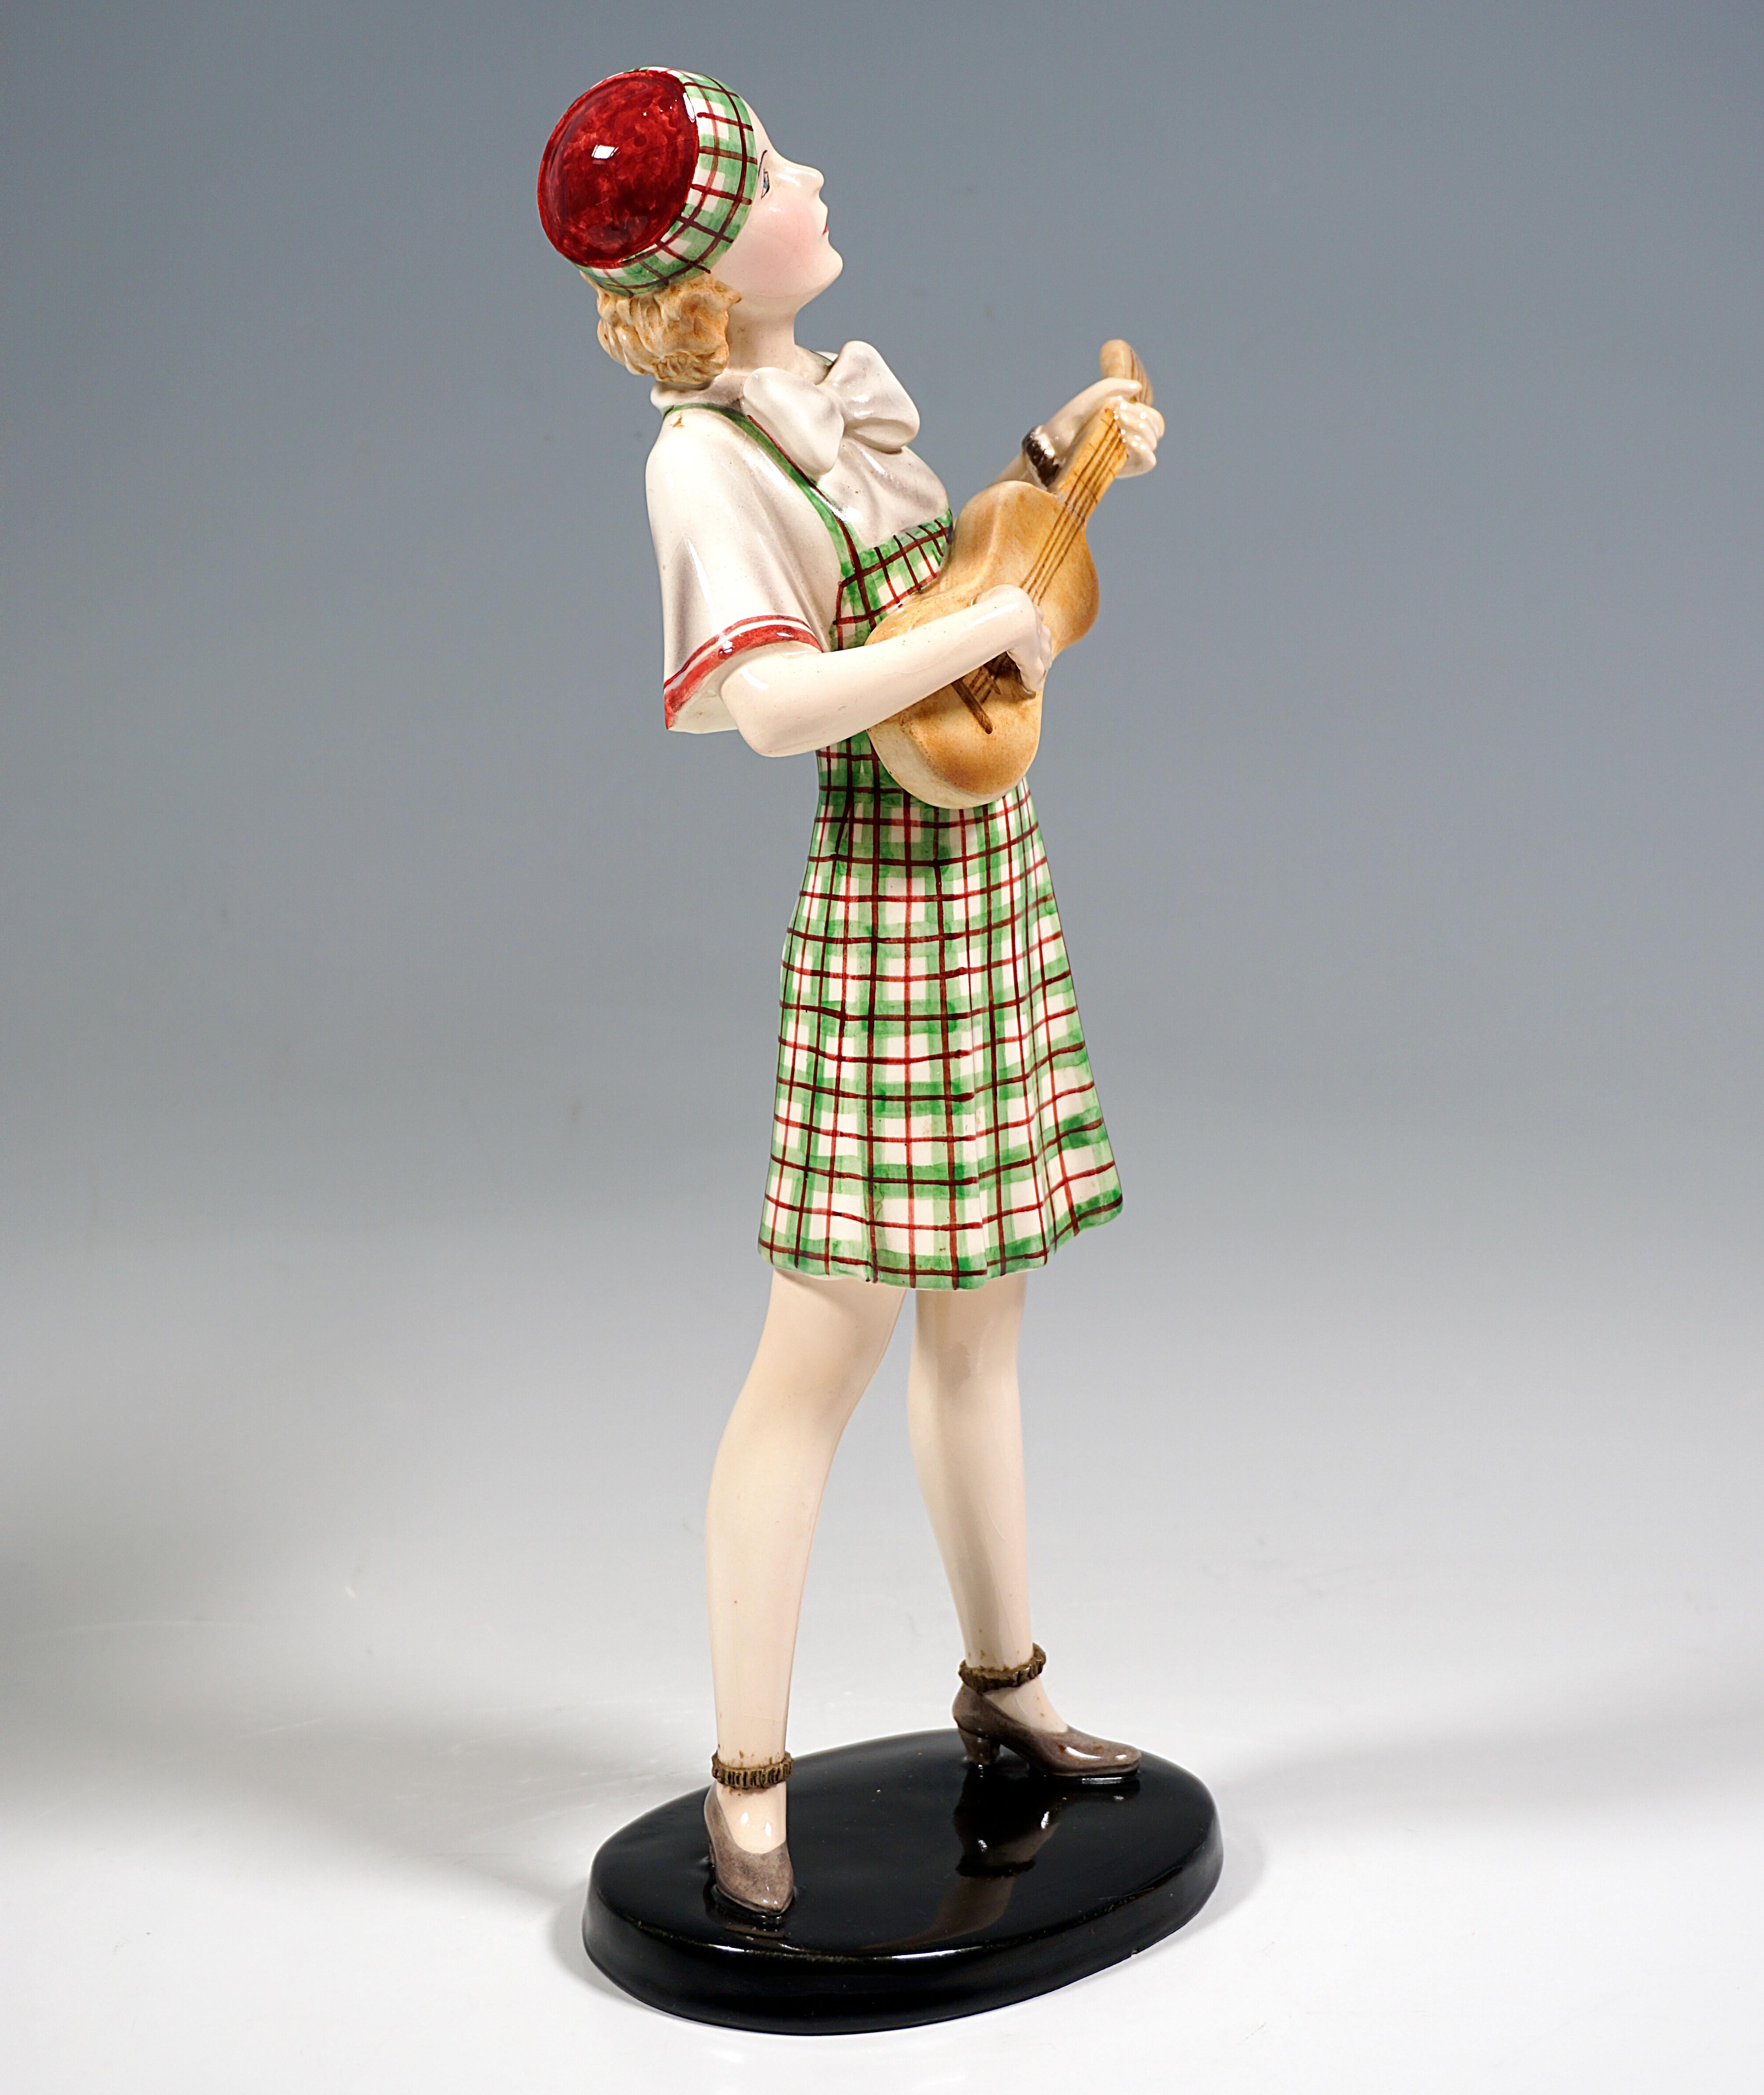 Sehr seltene Goldscheider Wien Keramik Figur aus den 1930er Jahren:
Stehende junge Frau mit blondem Haar in beige-grün-rot kariertem Kleid über einer Bluse mit großen Maschen und weiten rot gesäumten kurzen Ärmeln, im Haar eine zum Kleid passende